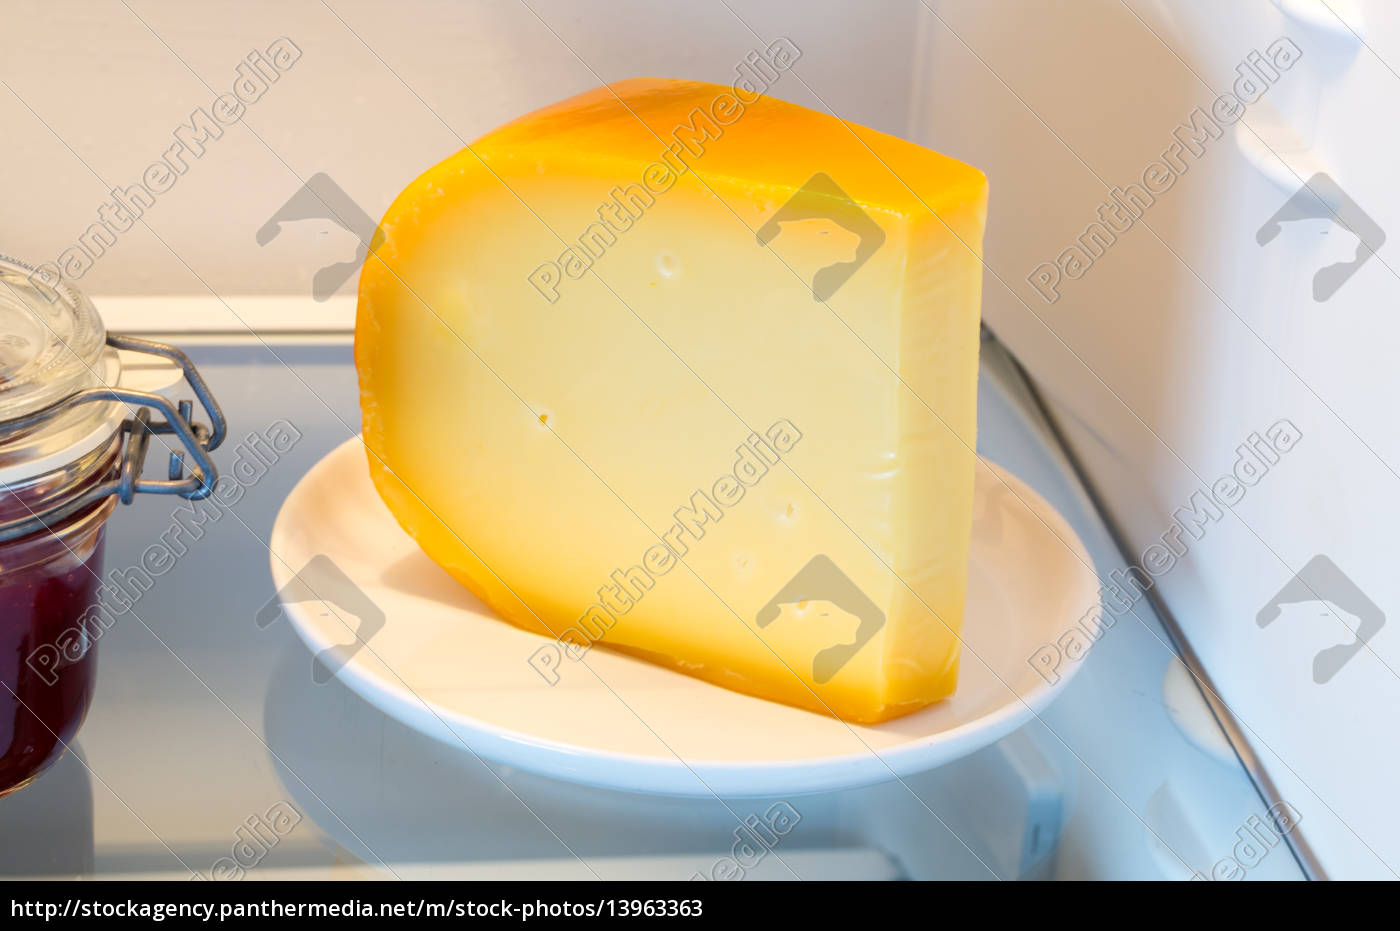 https://mh-2-agenzia-di-stock.panthermedia.net/media/previews/0013000000/13963000/~formaggio-in-frigo-con-la-porta_13963363_high.jpg